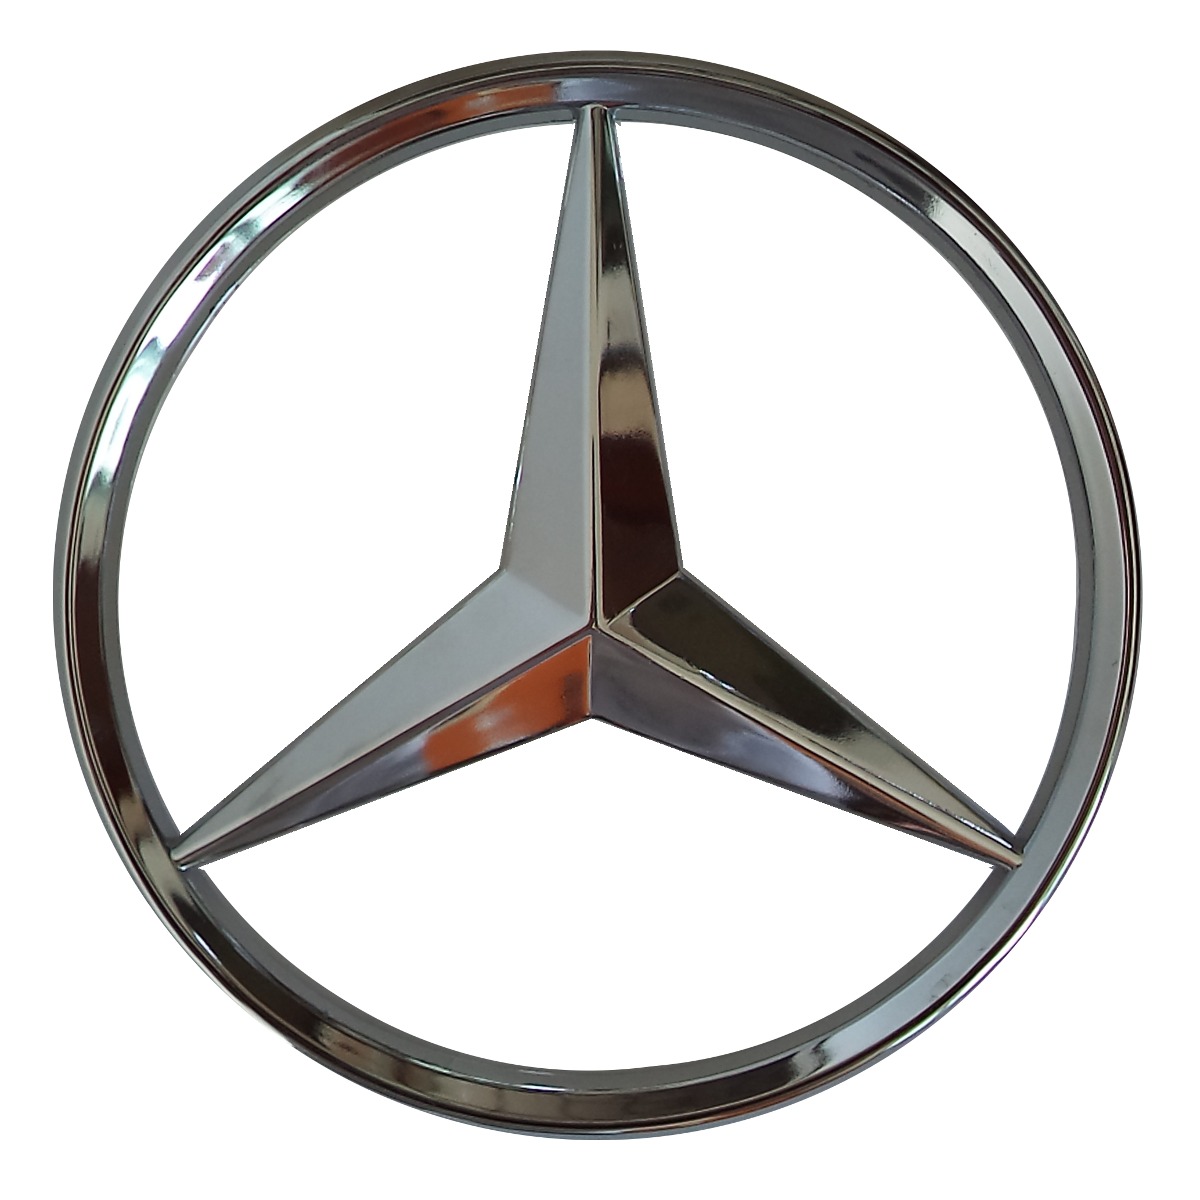 Emblema Mercedes Benz - R$ 39,90 em Mercado Livre